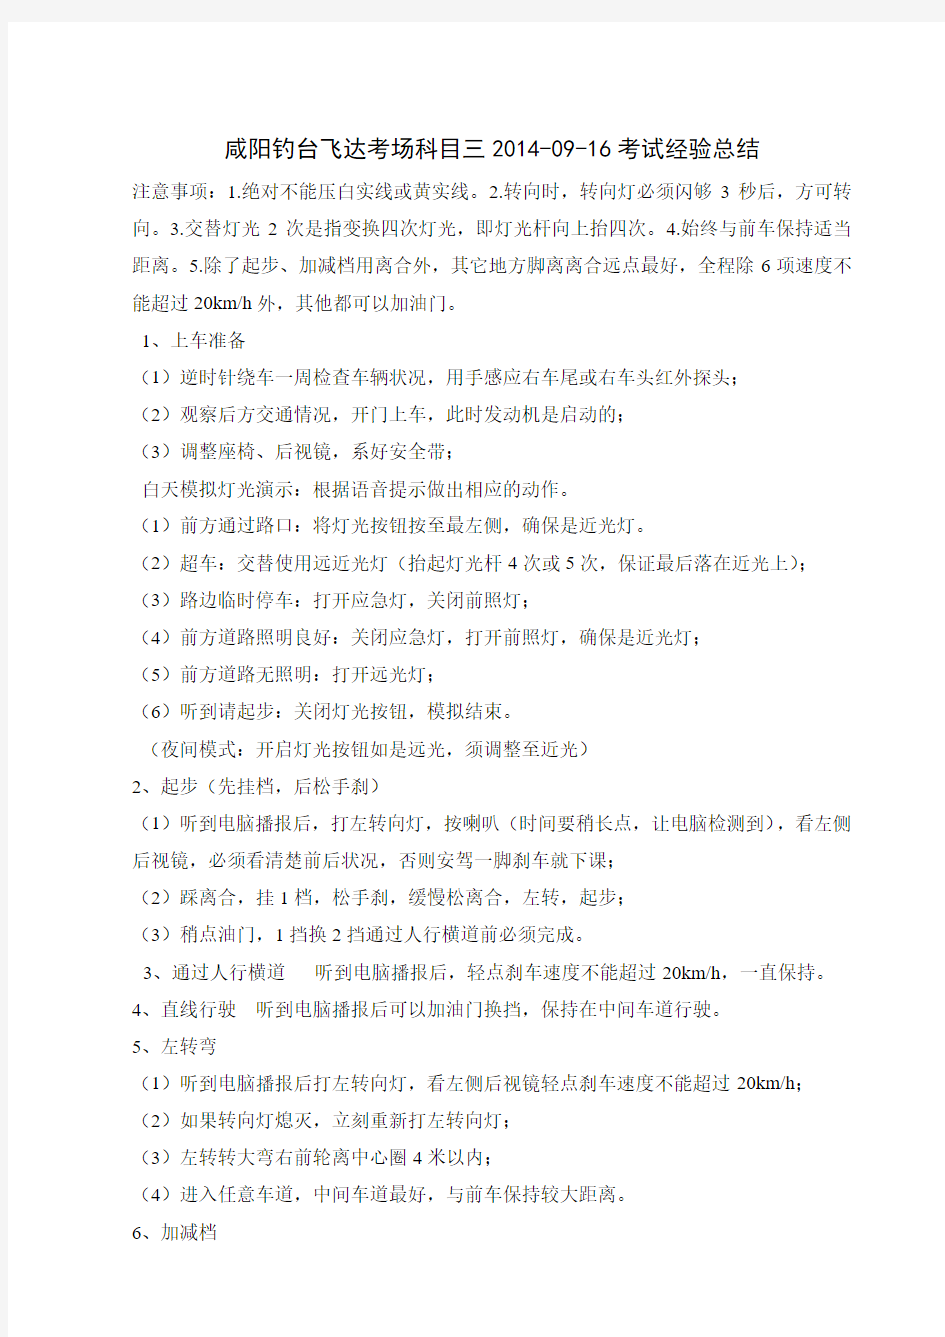 咸阳钓台飞达考场科目三2014-09-16考试经验总结